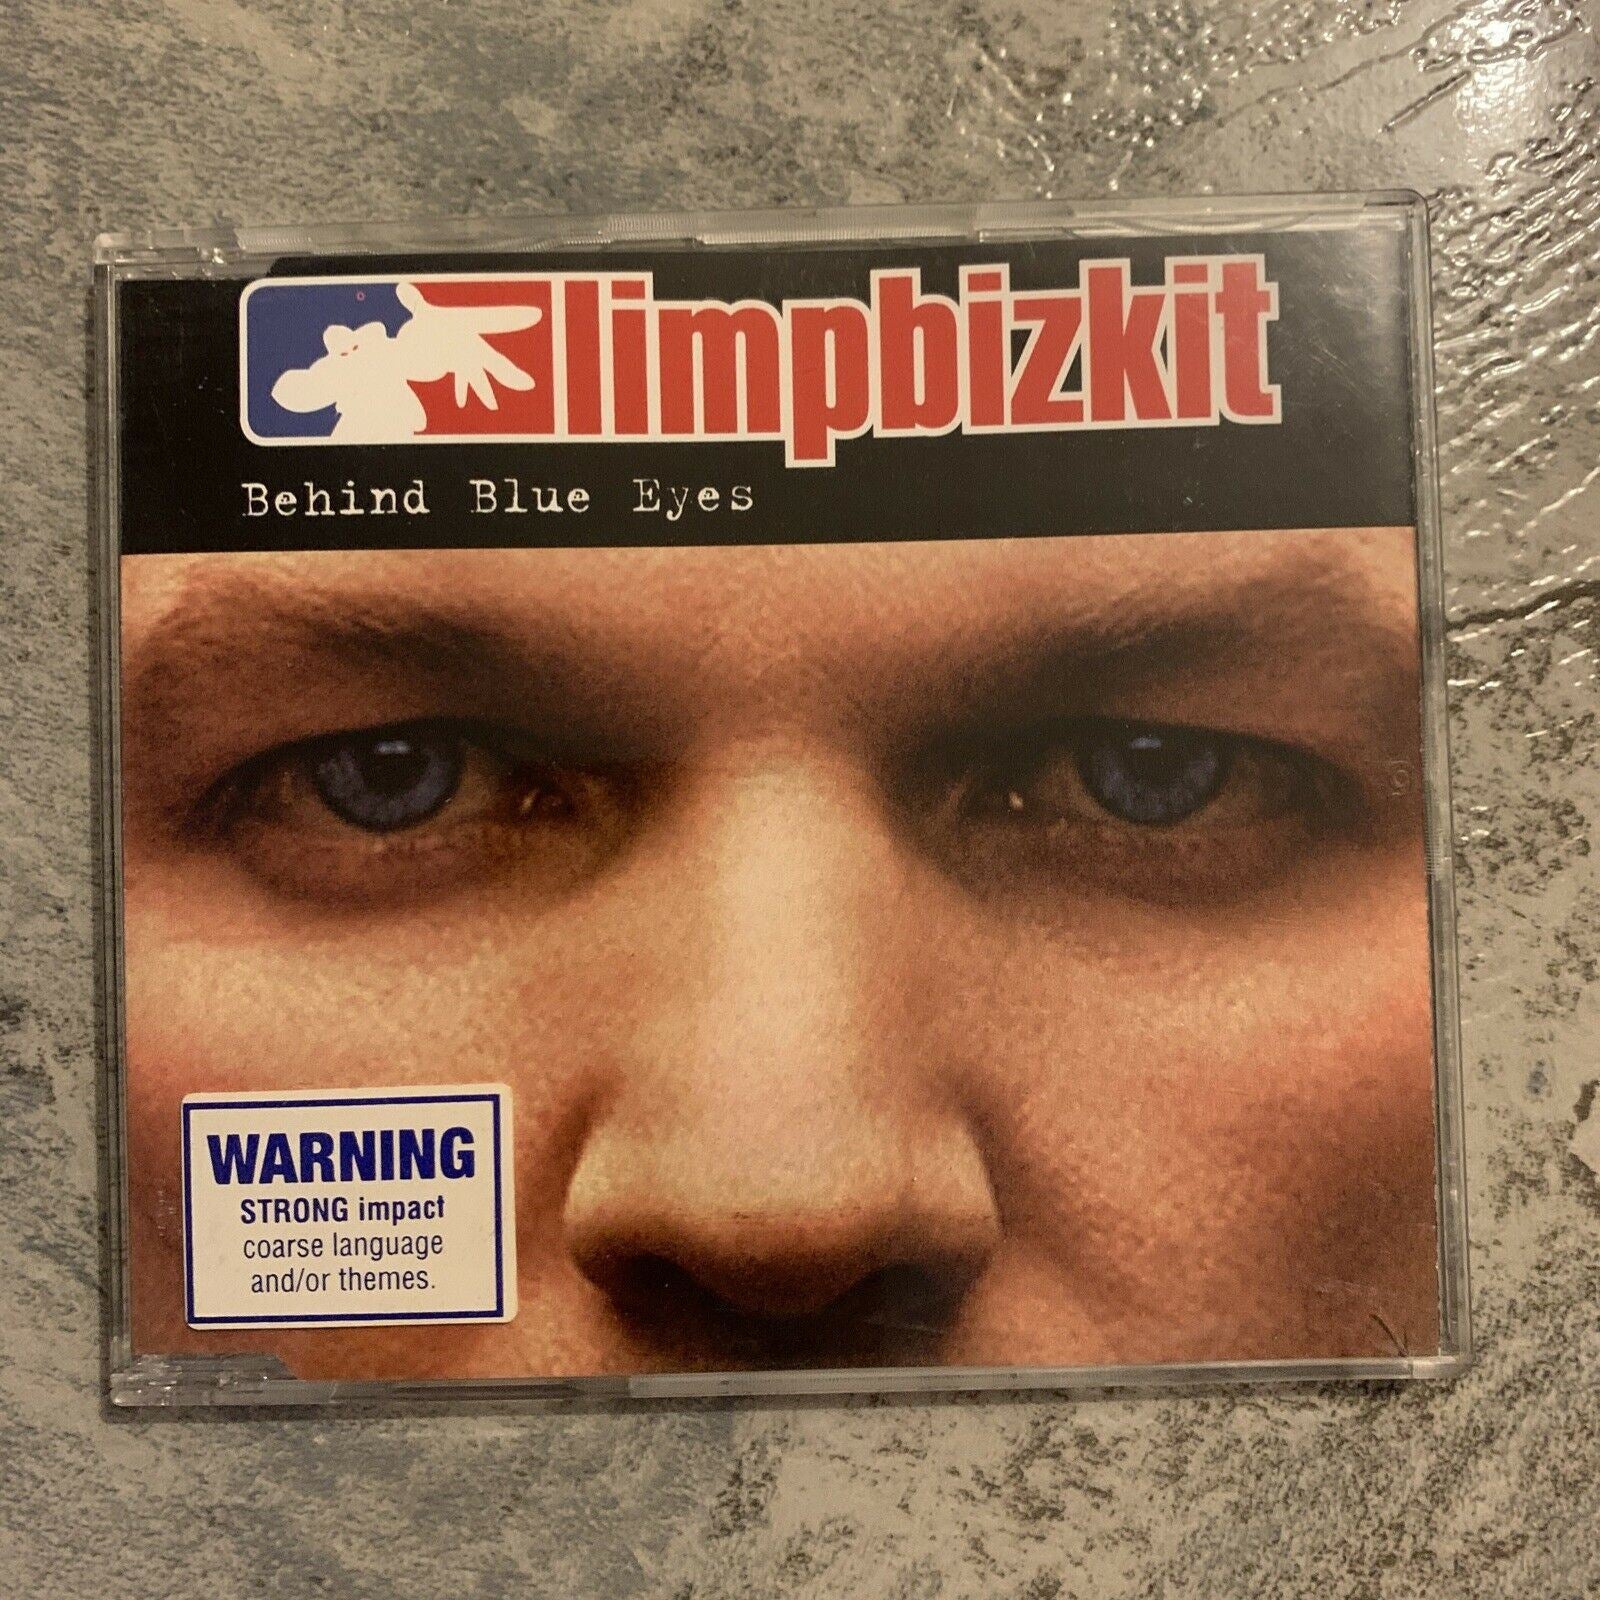 Limpbizkit / Limp Bizkit – Behind Blue Eyes (CD, 2003) Single 